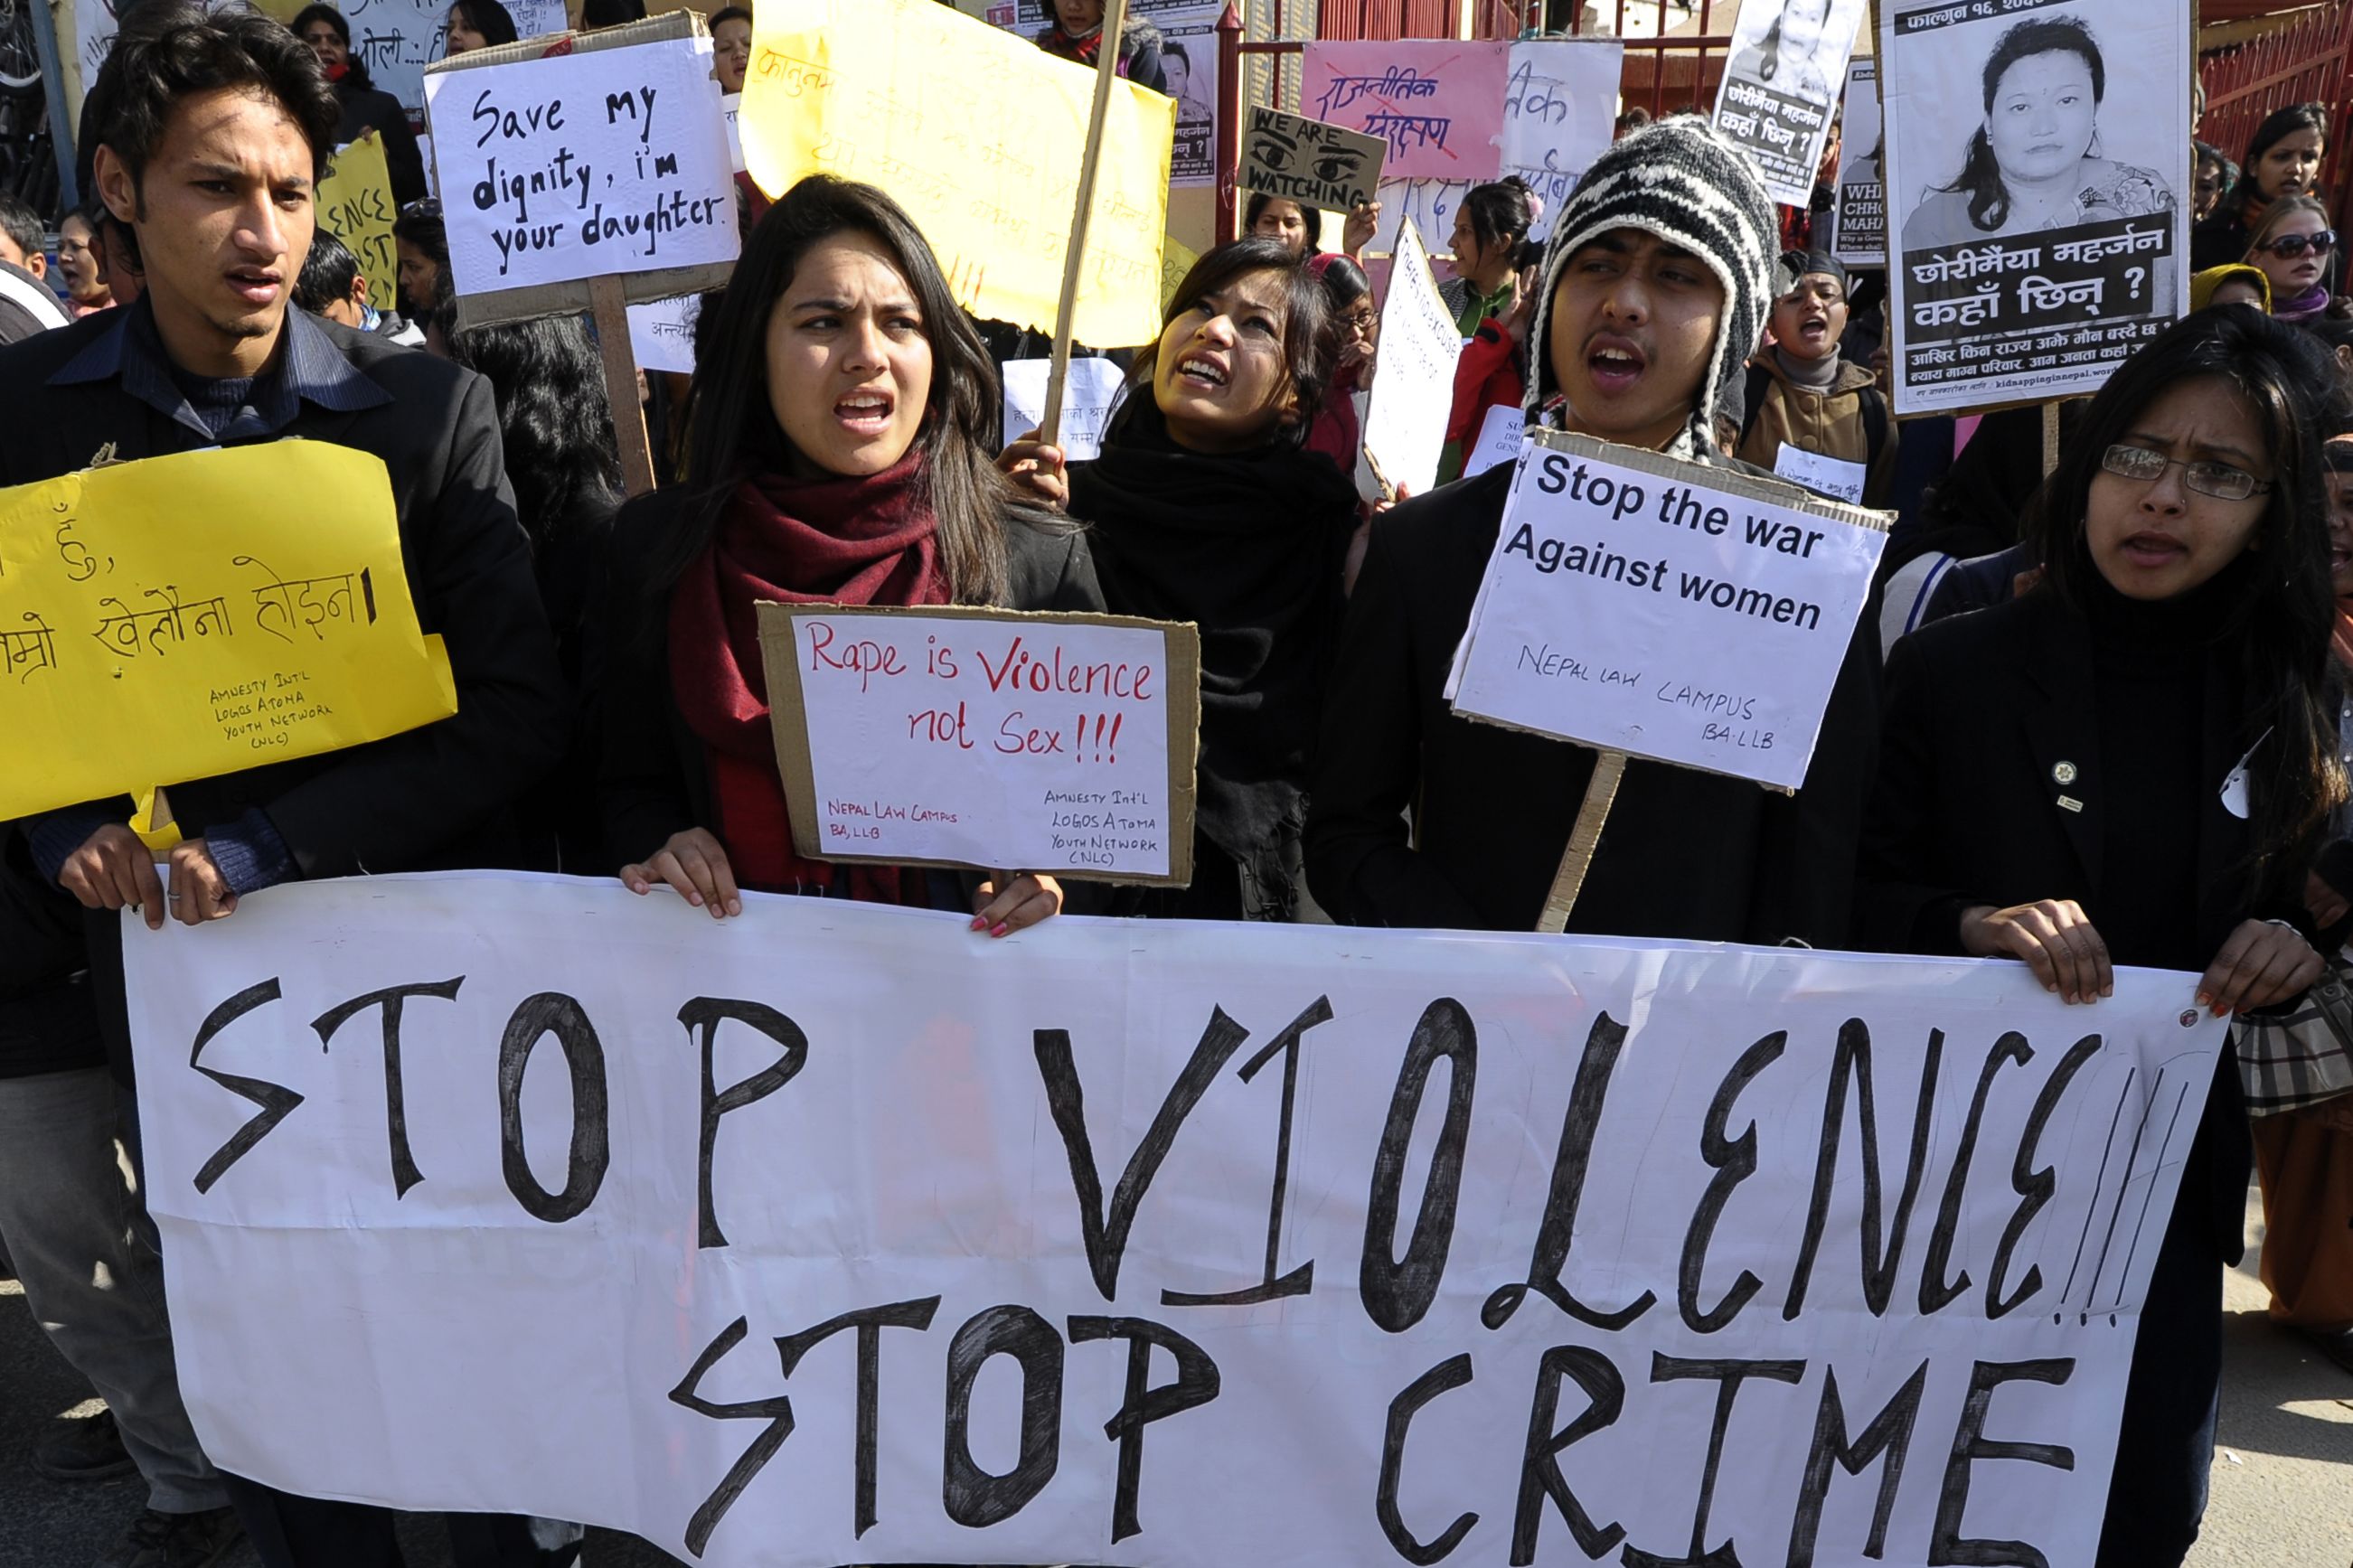 Demonstrations spread in Nepal after rape case | CNN